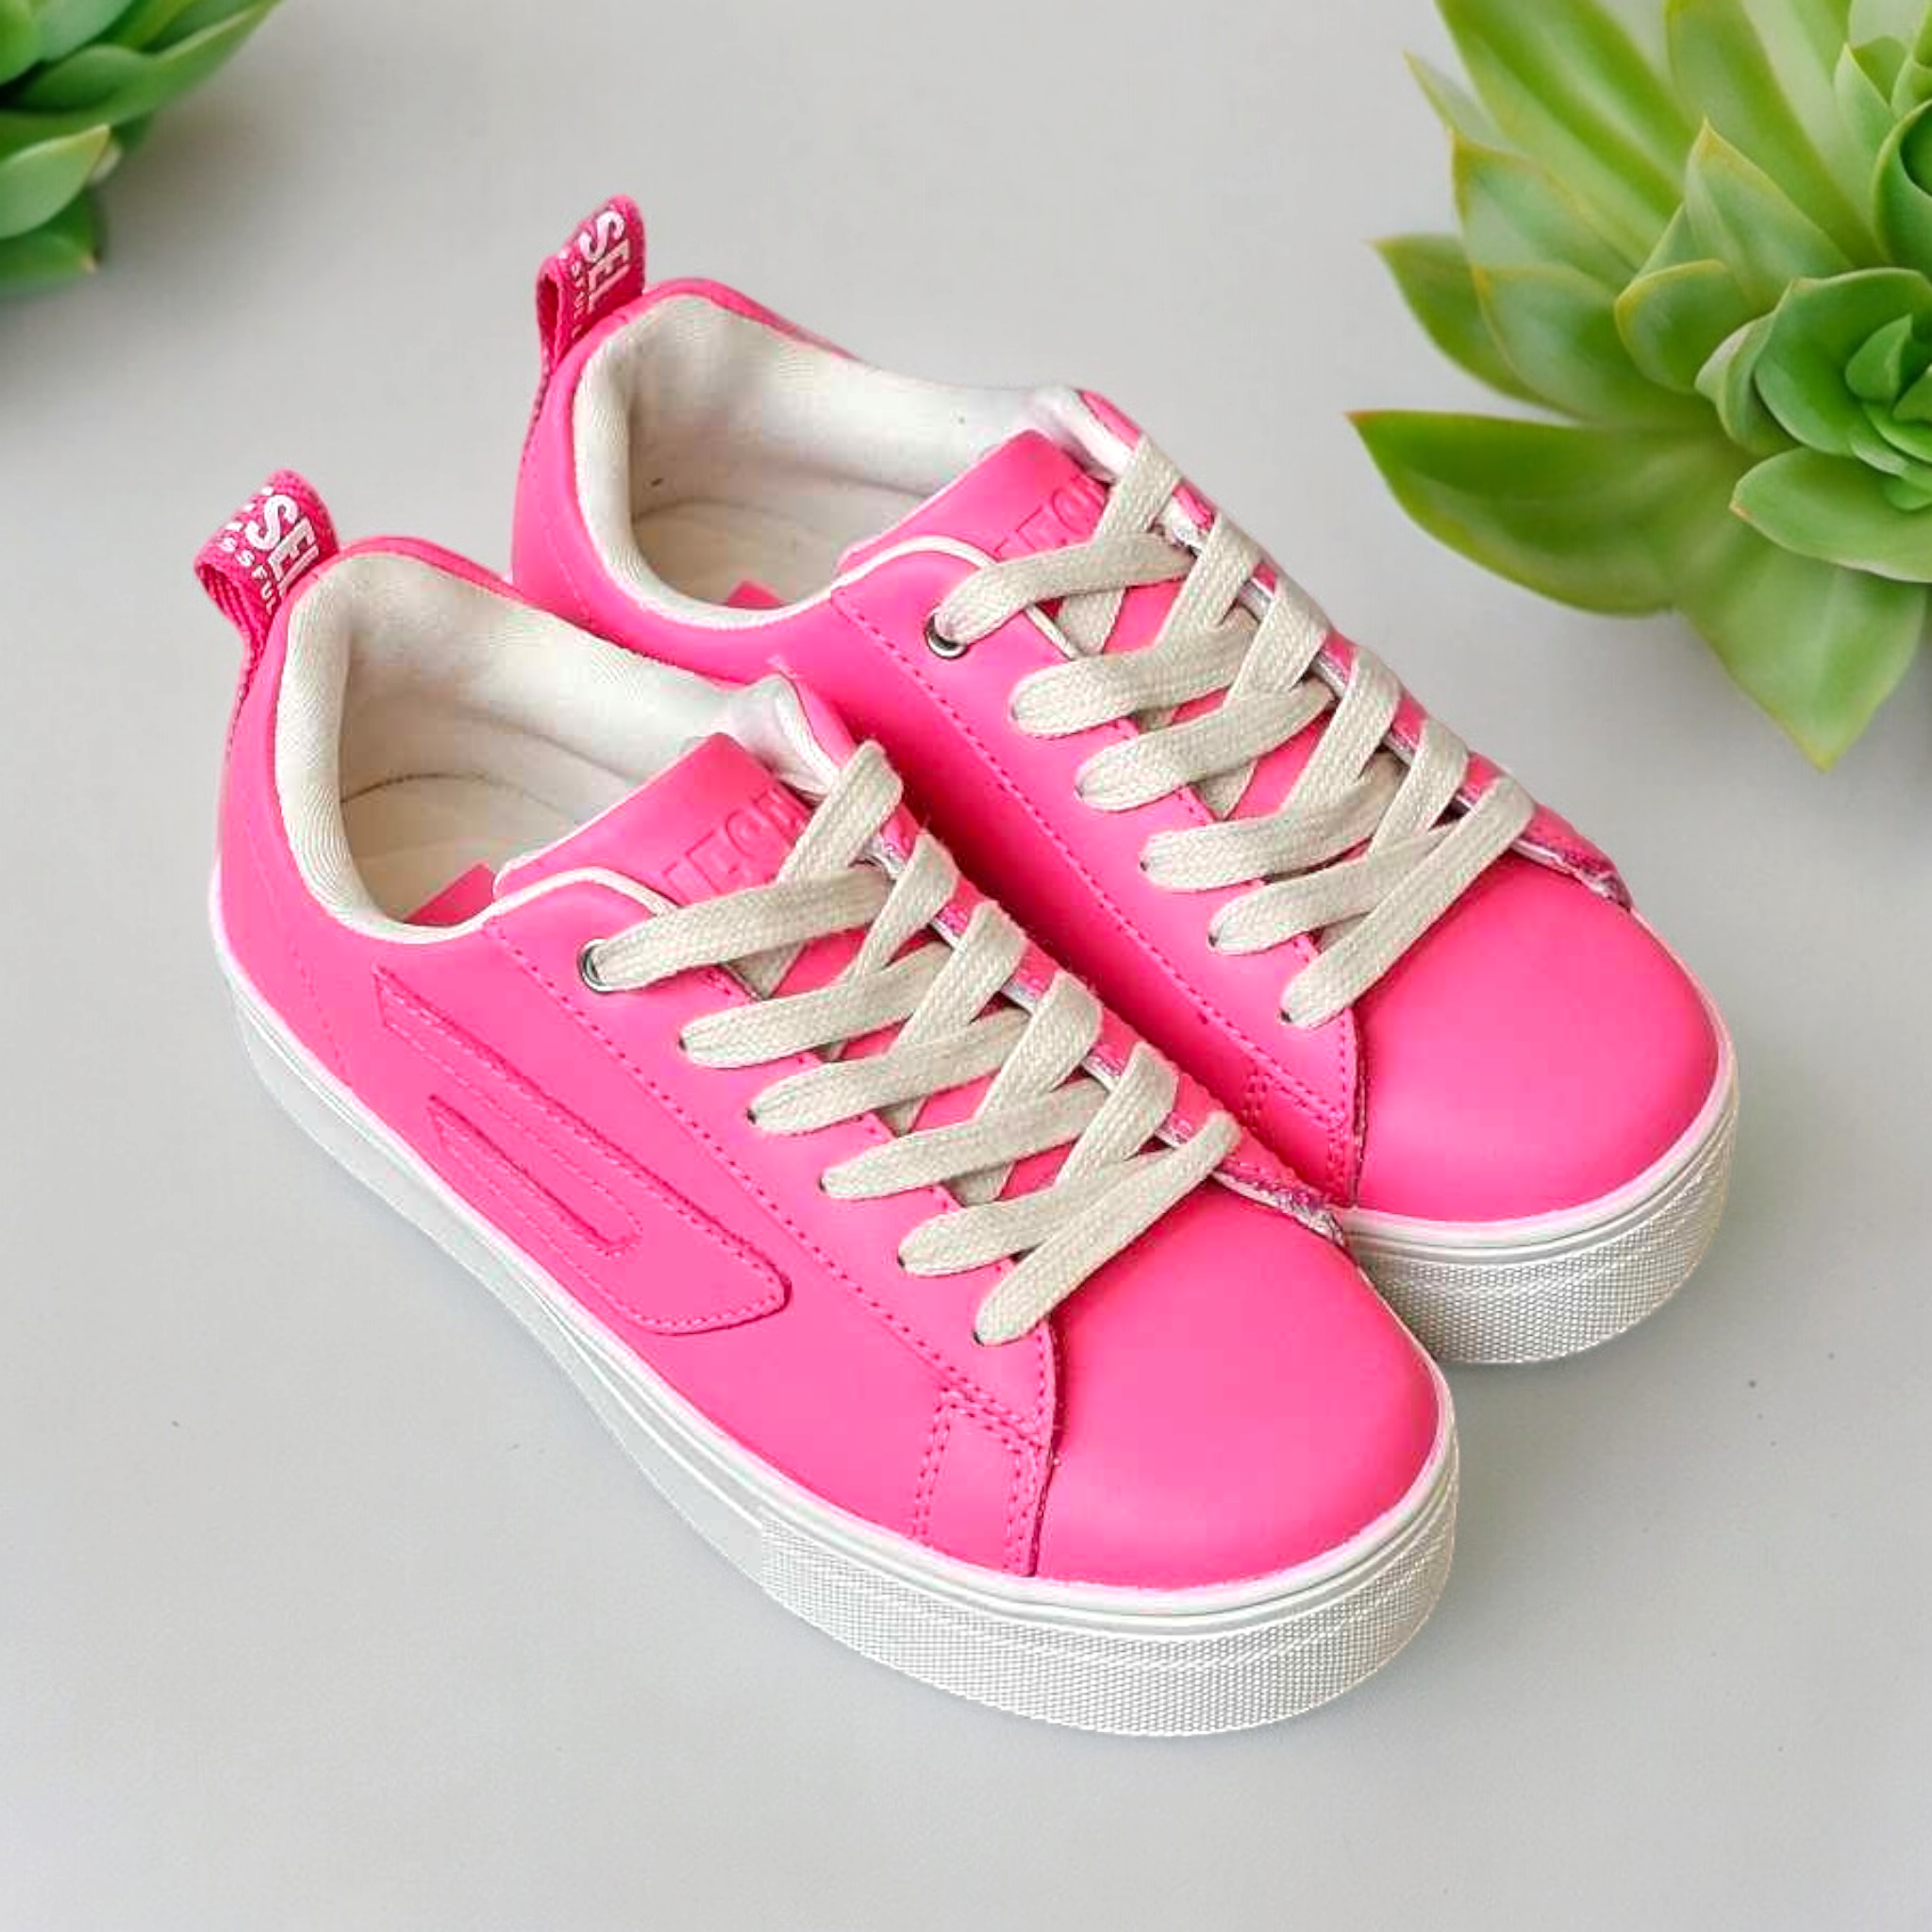 Diesel Pink Shoes